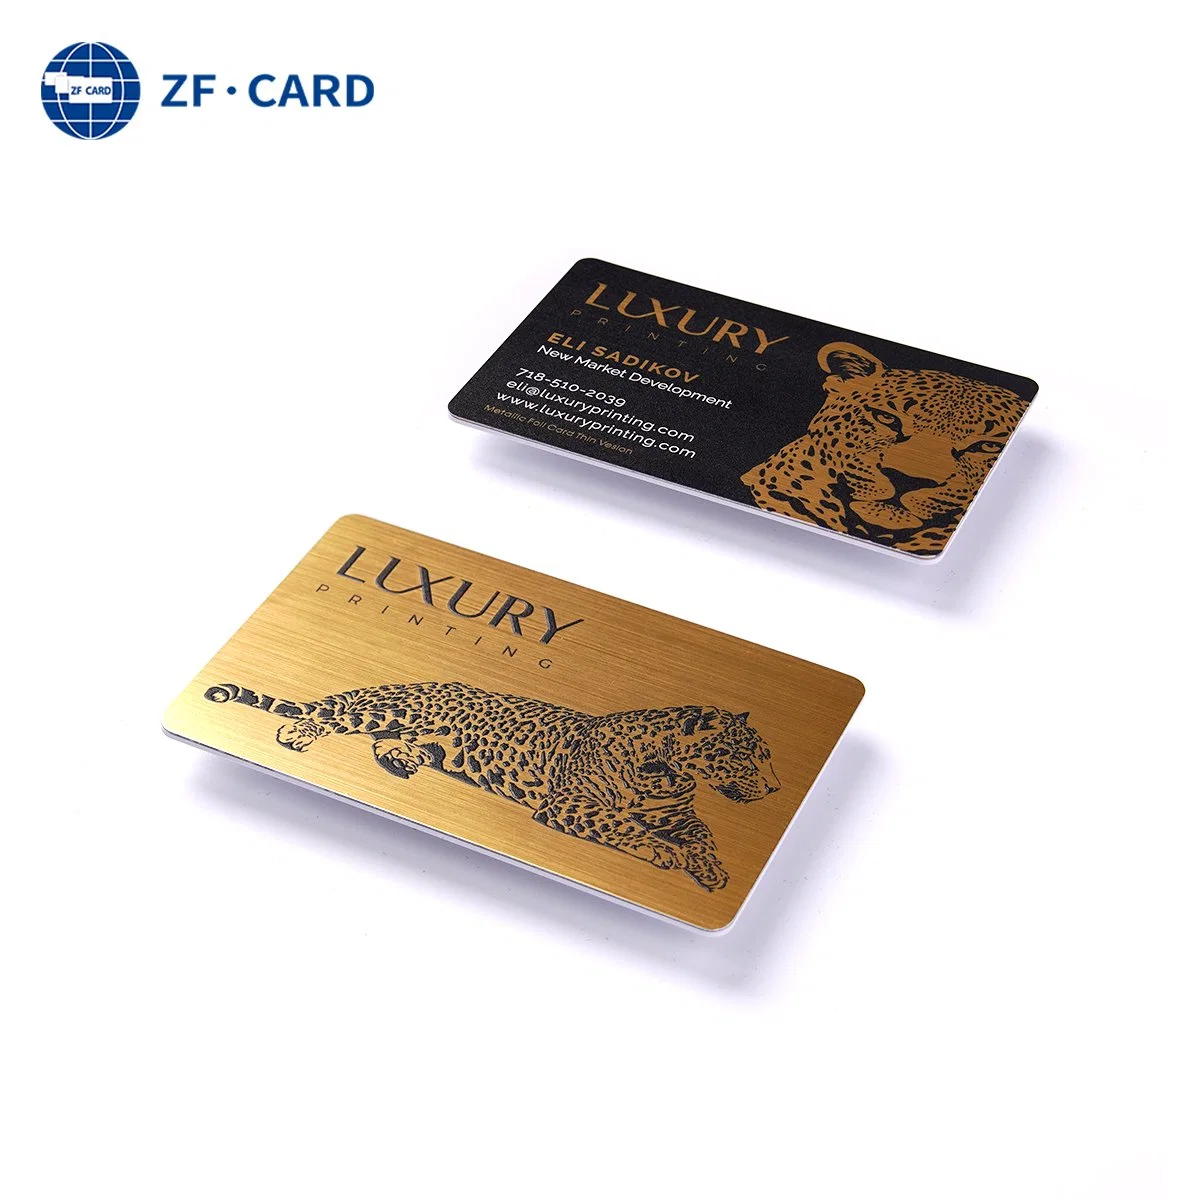 Custom Printed Plastic PVC 125kHz NFC RFID Card, 85.5*54mm, Tk4100 T5577 Chip